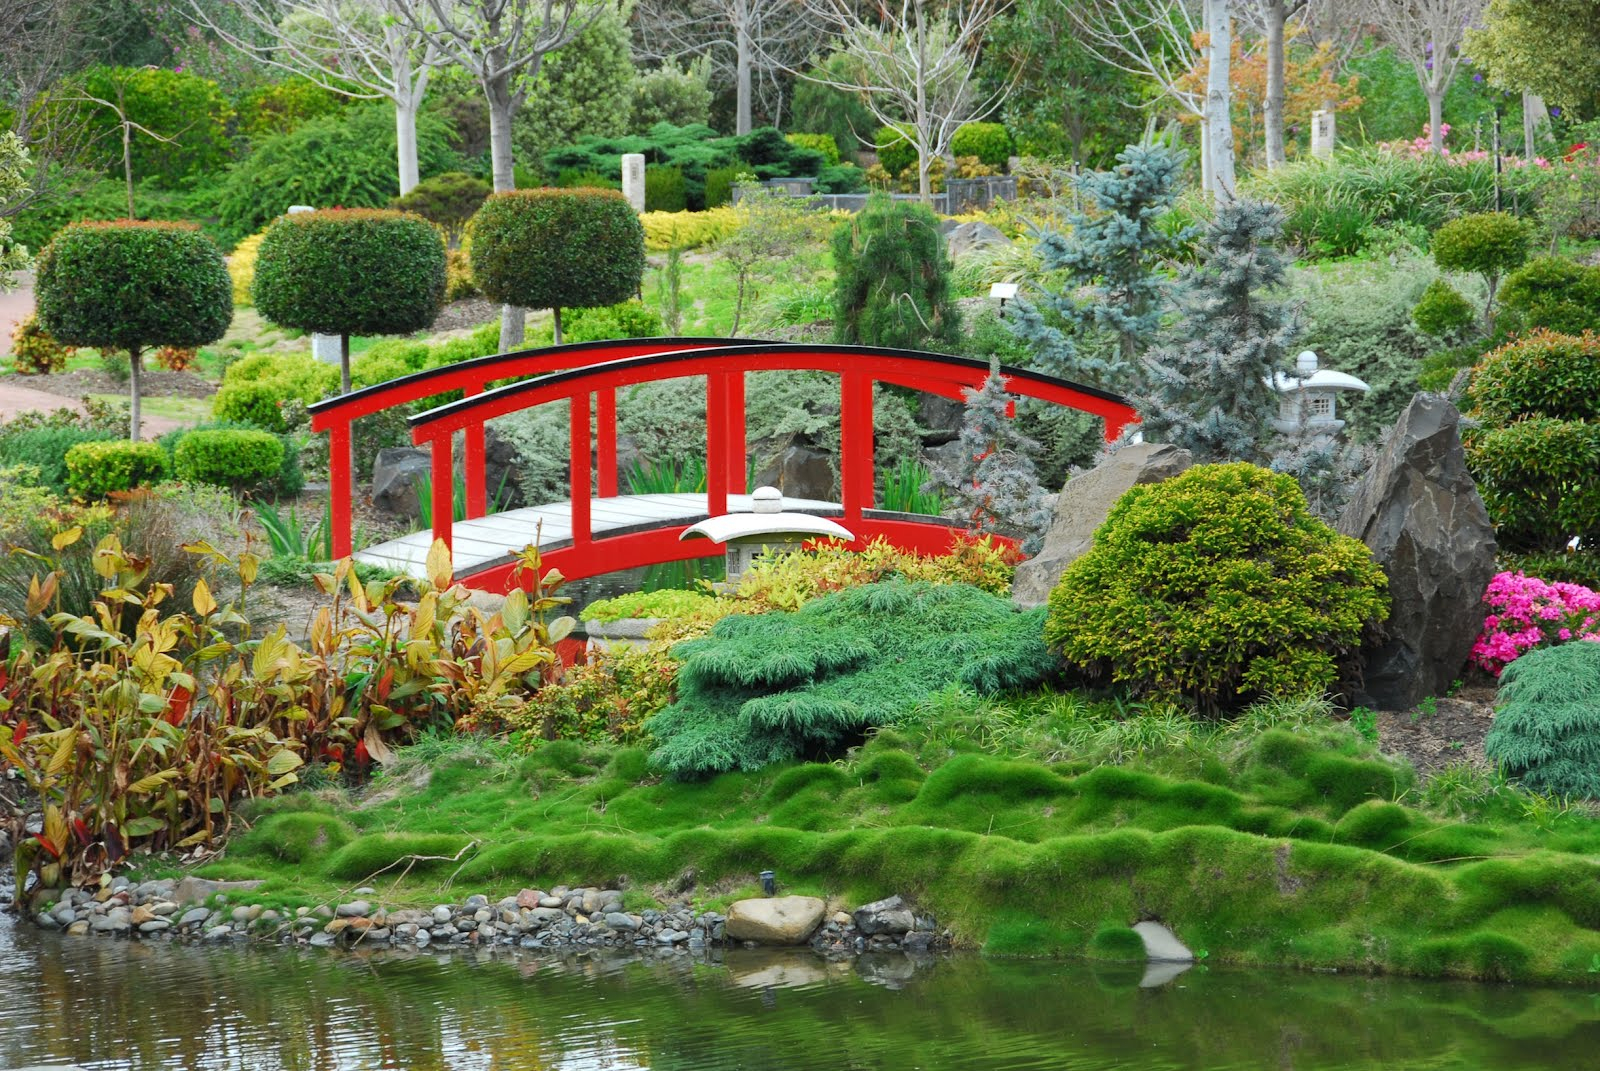 Banco De Imágenes: Jardín Japonés - Japanese Garden ... pour Imagenes De Jardines